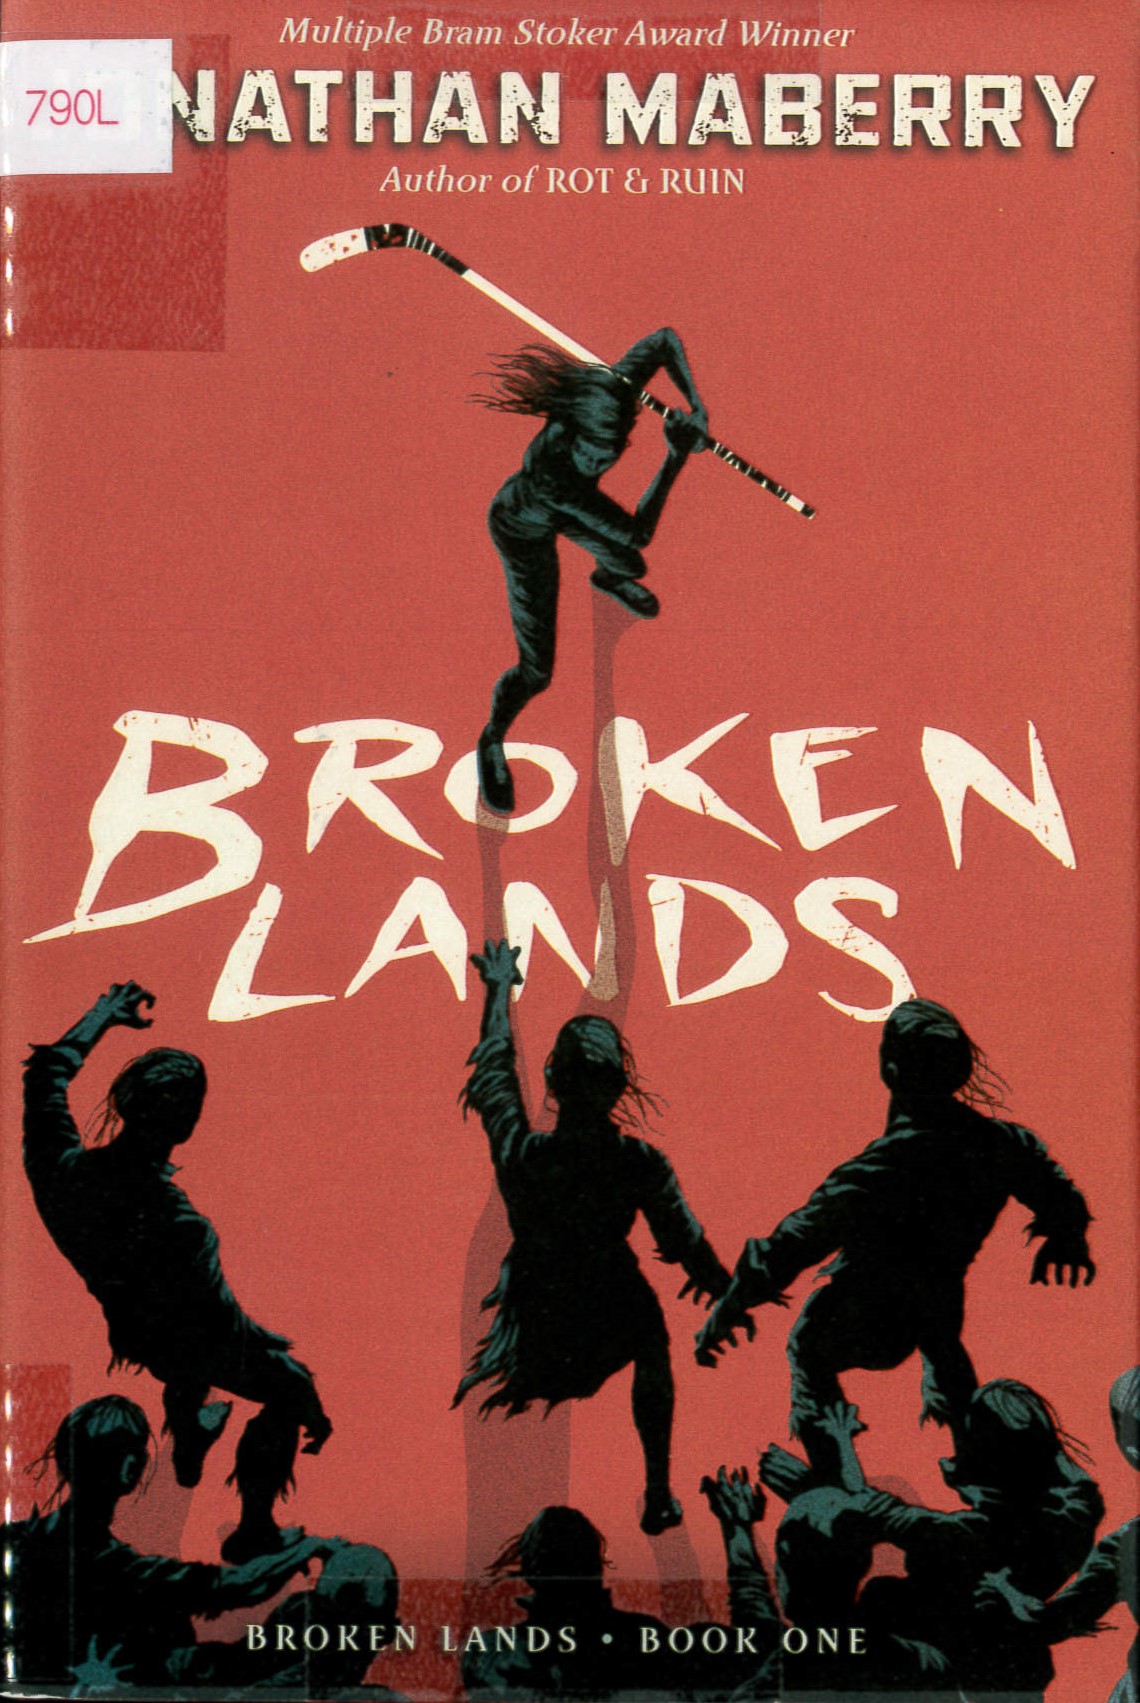 Broken lands /